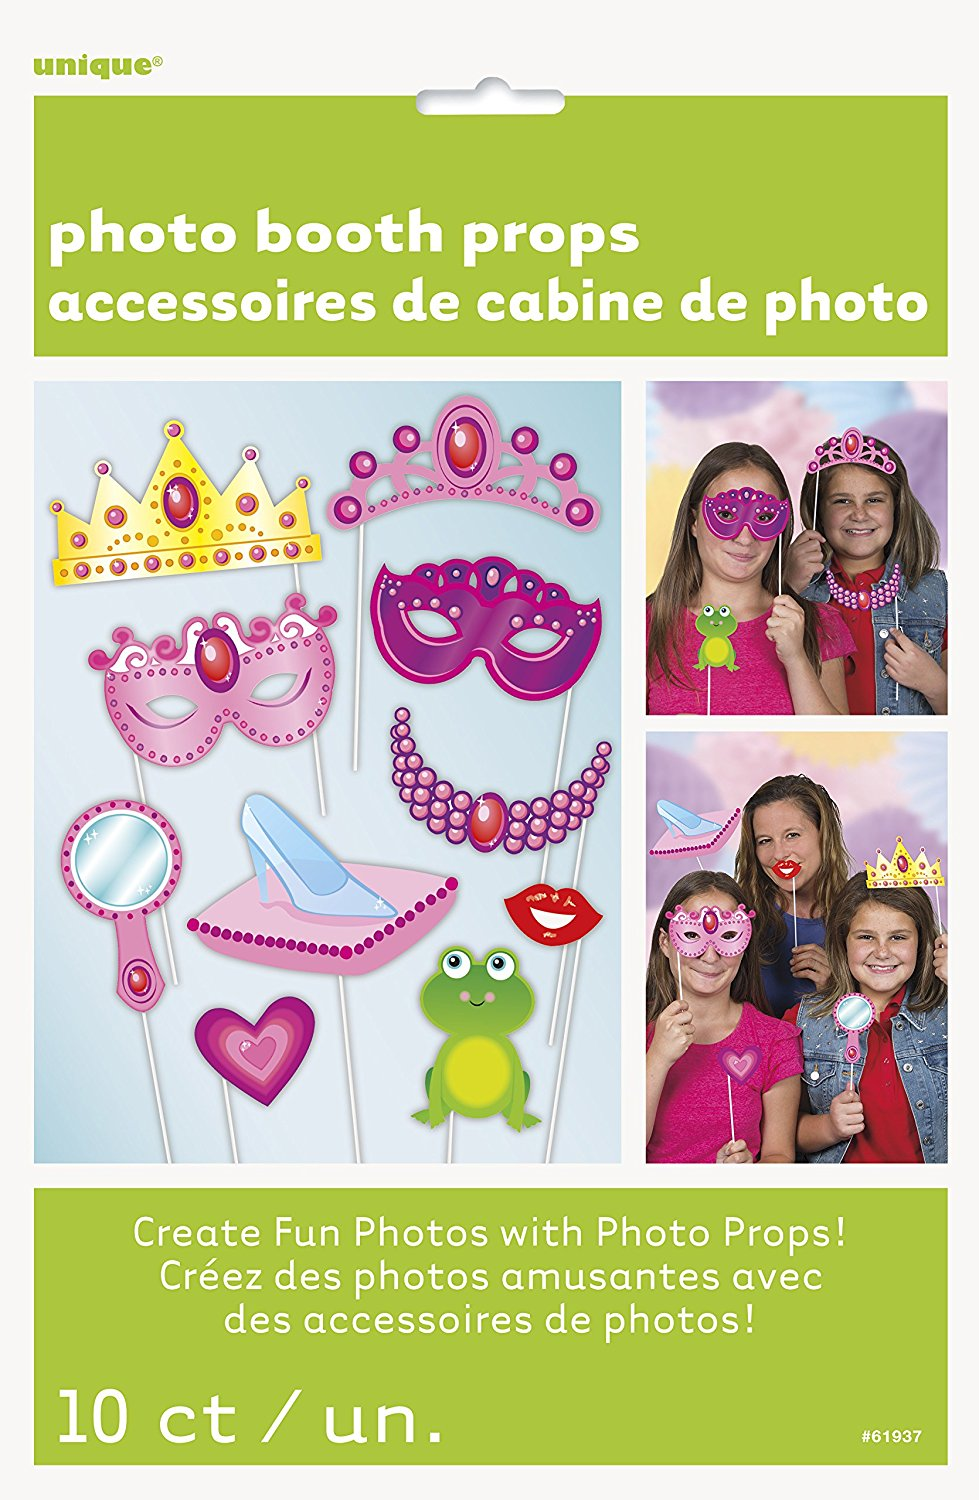 Princess Photo Booth Props (10pk)